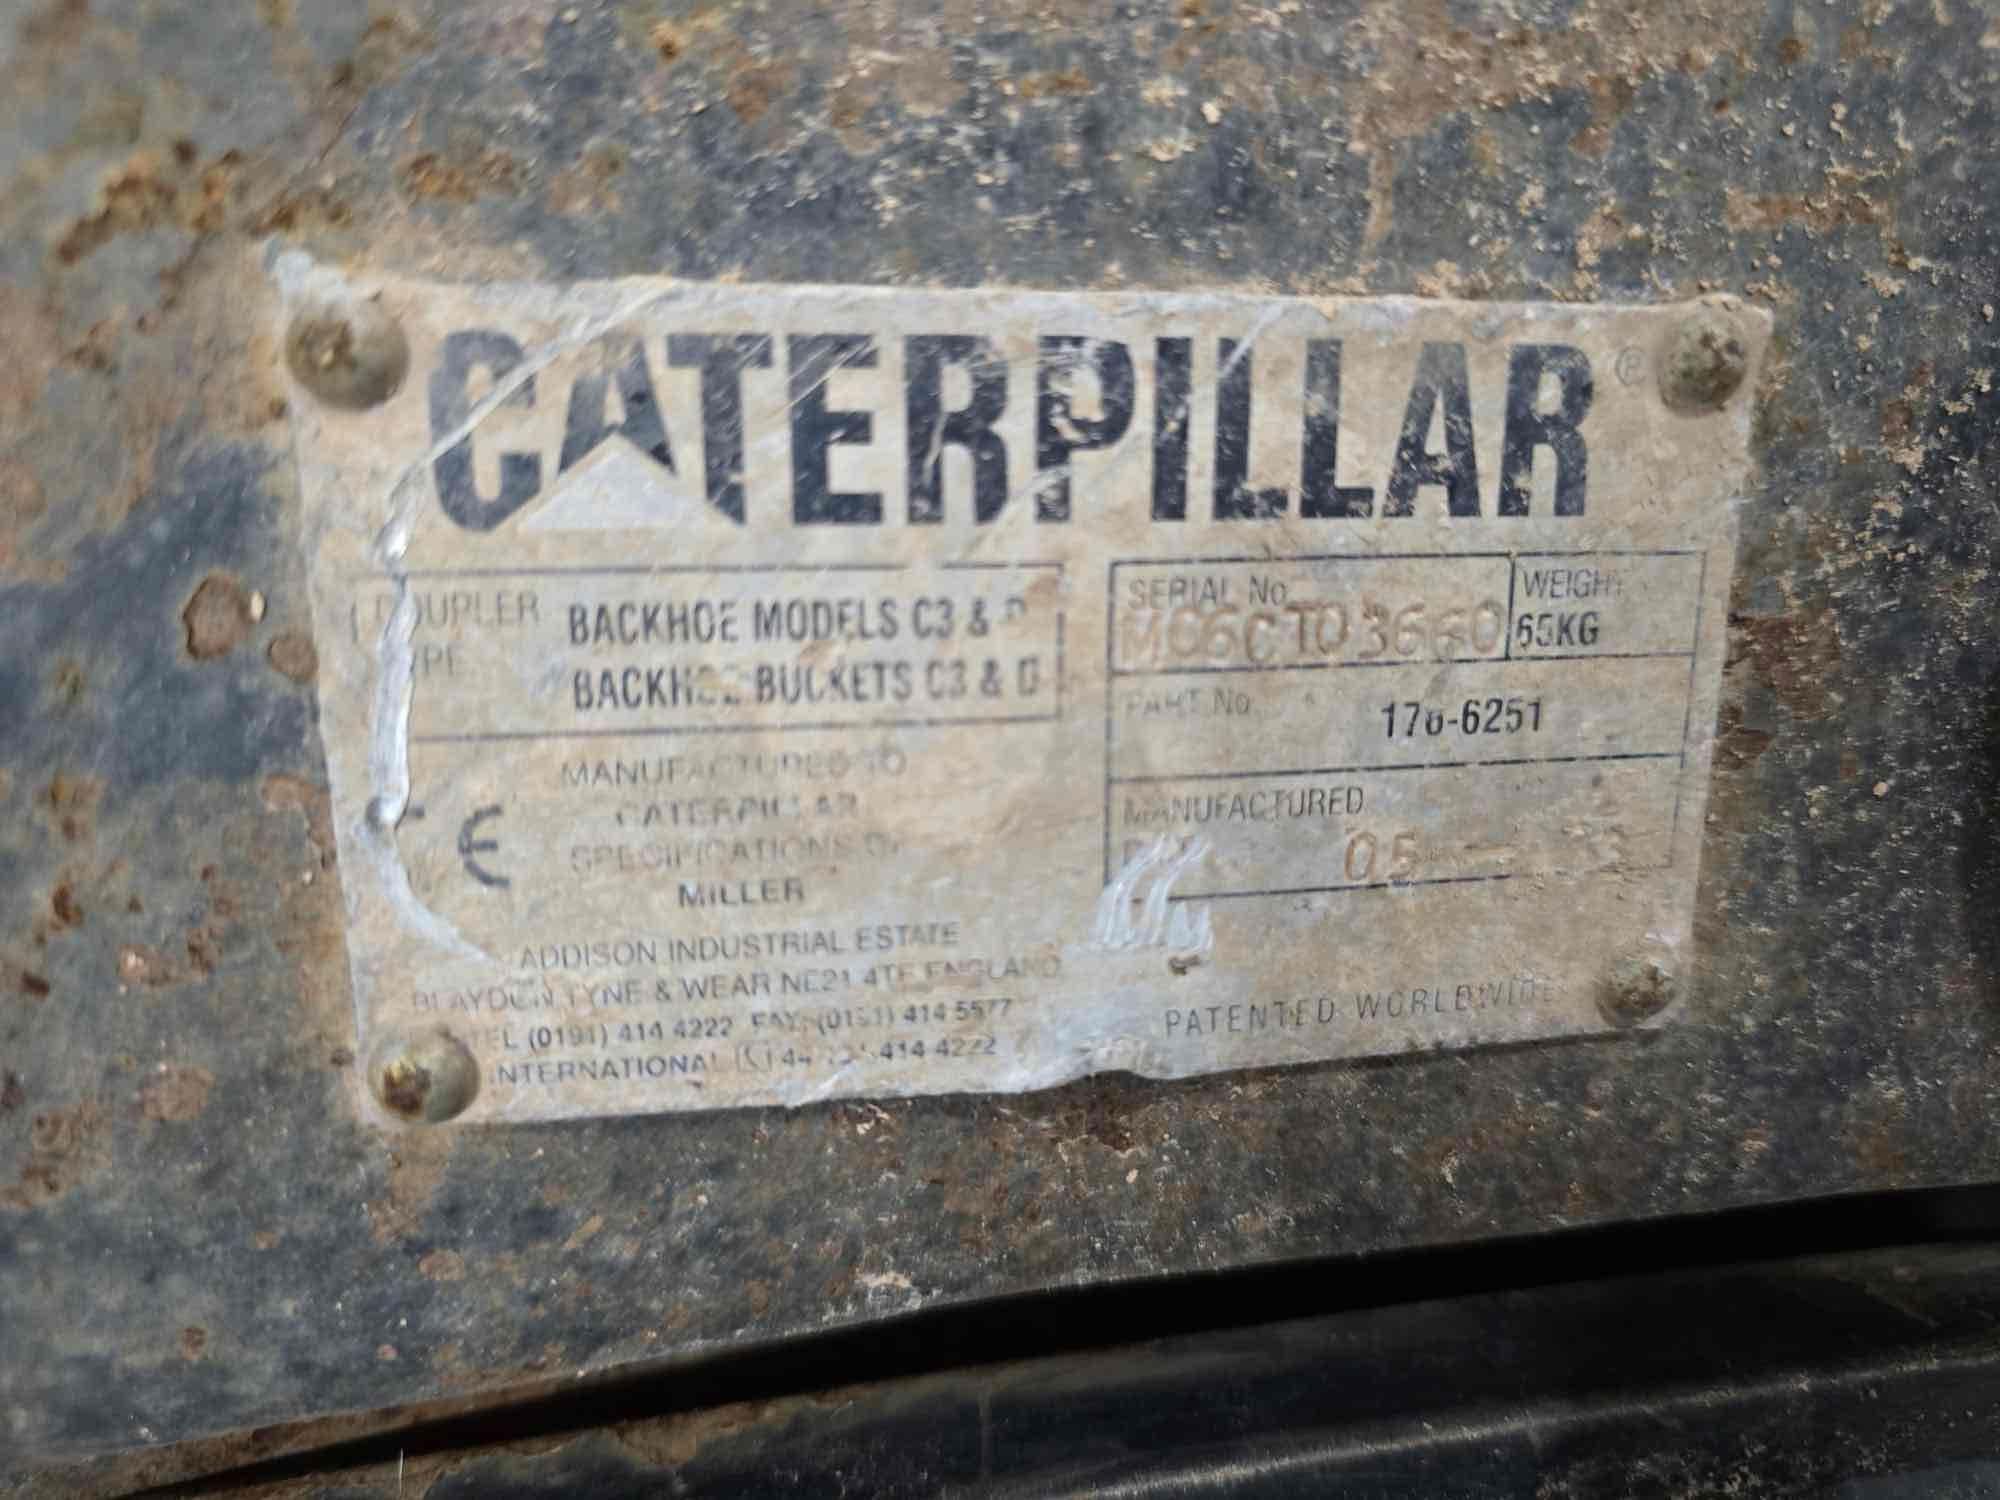 2004 Caterpillar 430D Backhoe Loader